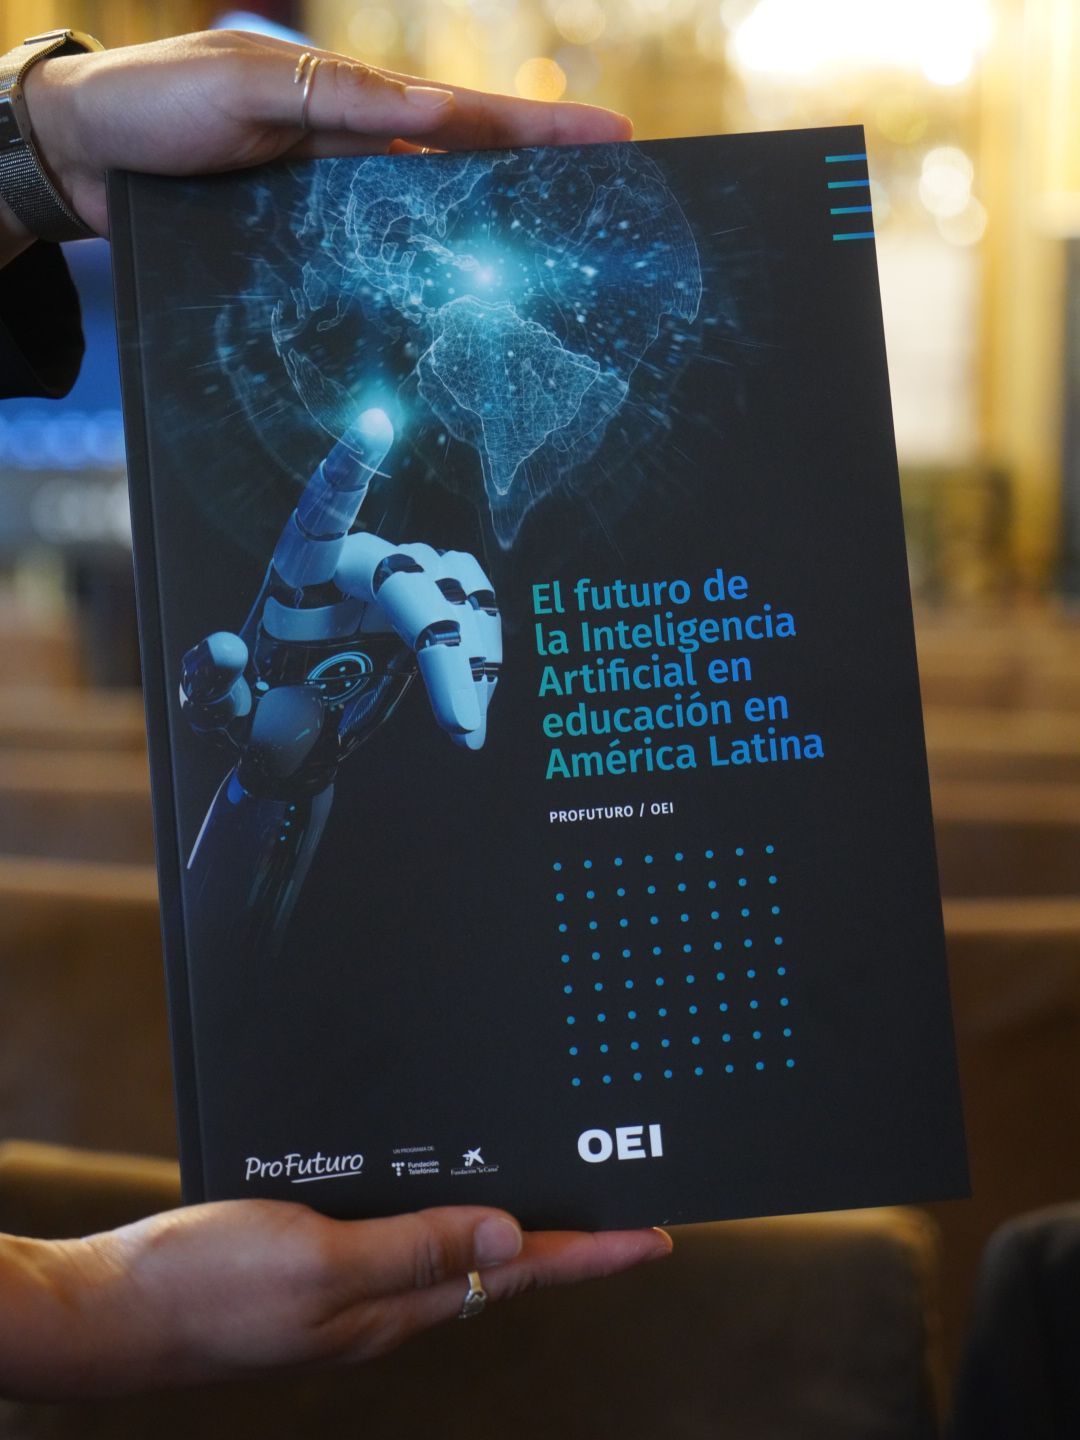 La inteligencia artificial en educación en América Latina a debate